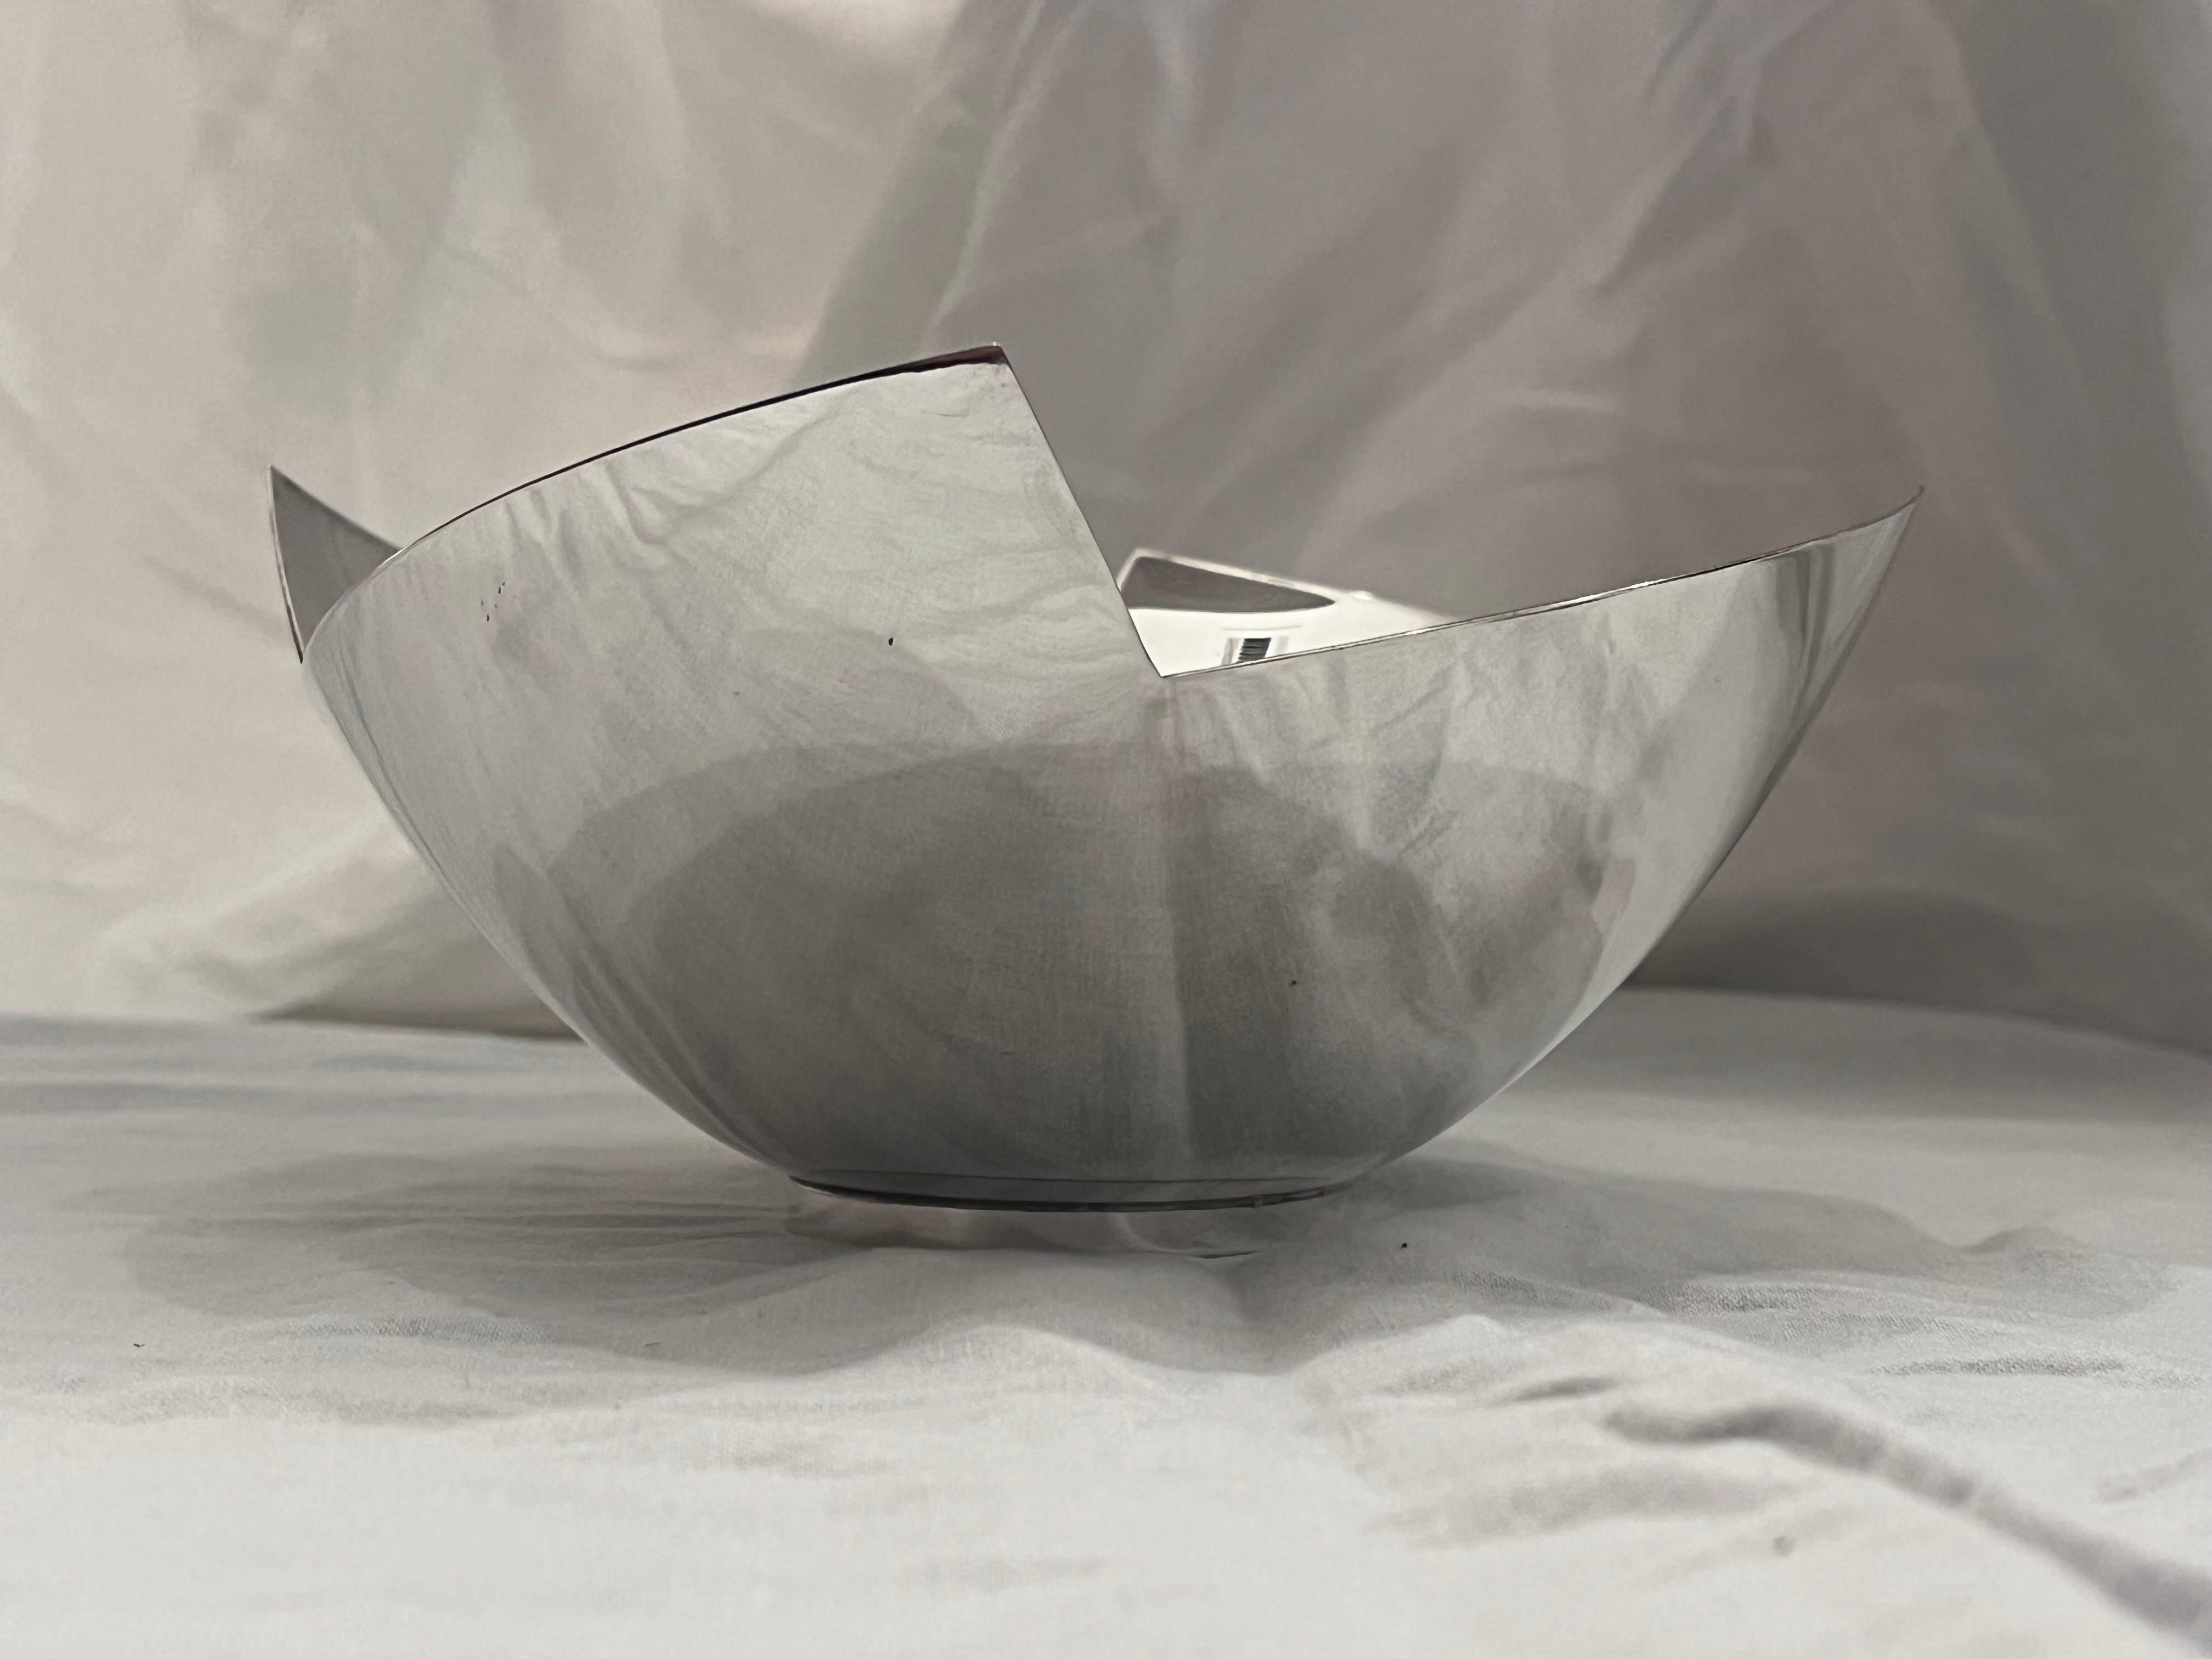 Un magnifique bol en métal argenté de style post-moderne, réalisé par Elsa Rady pour Swid Powell vers les années 1990. Les lignes géométriques fortes de la lèvre sont adoucies par la courbe douce du bol lui-même et par les proportions et l'échelle